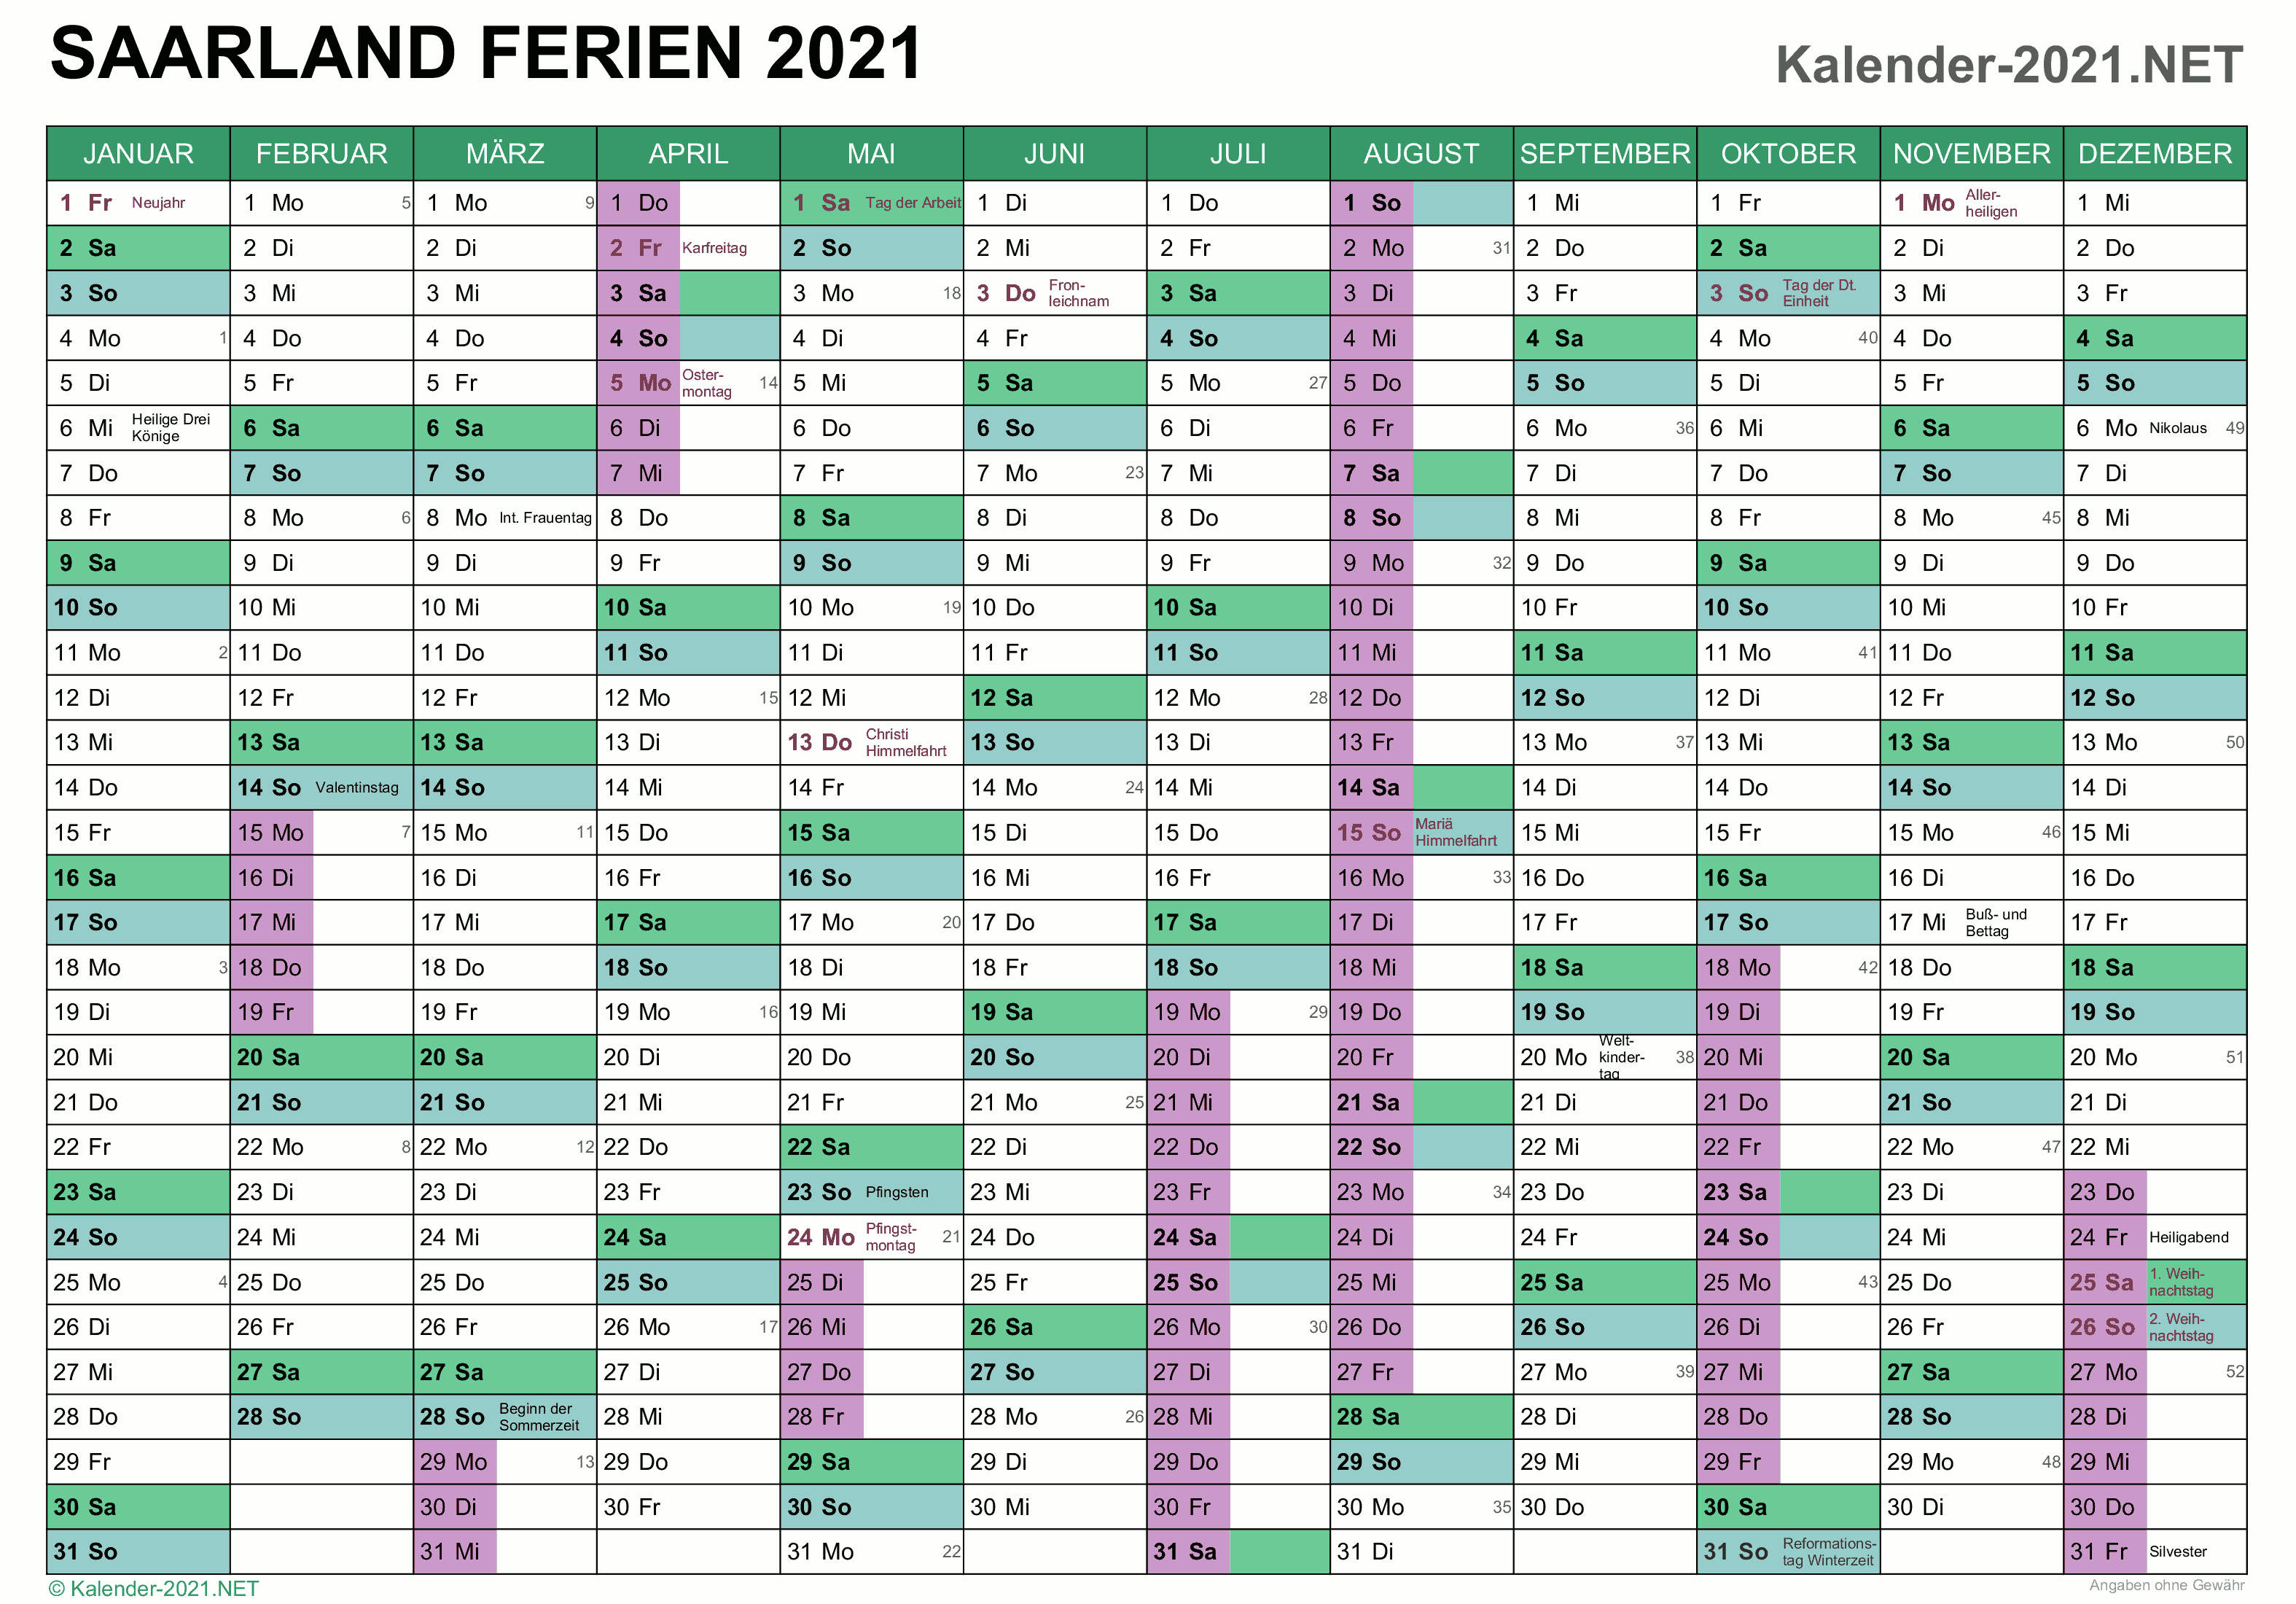 FERIEN Saarland 2021 - Ferienkalender & Übersicht